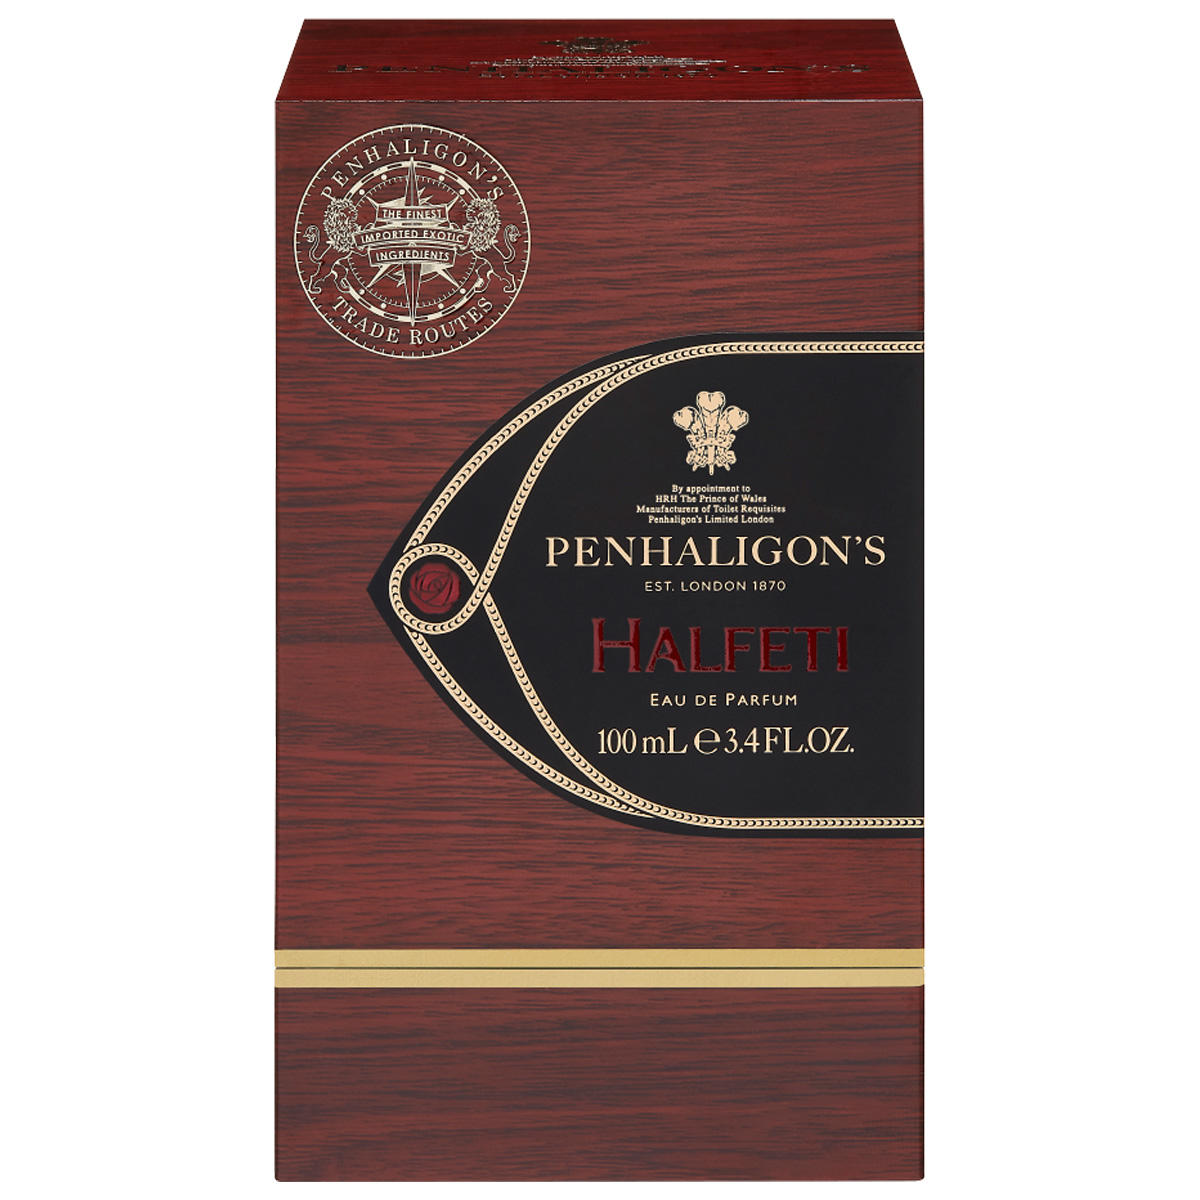 PENHALIGON'S Trade Routes Halfeti Eau de Parfum 100 ml - 3